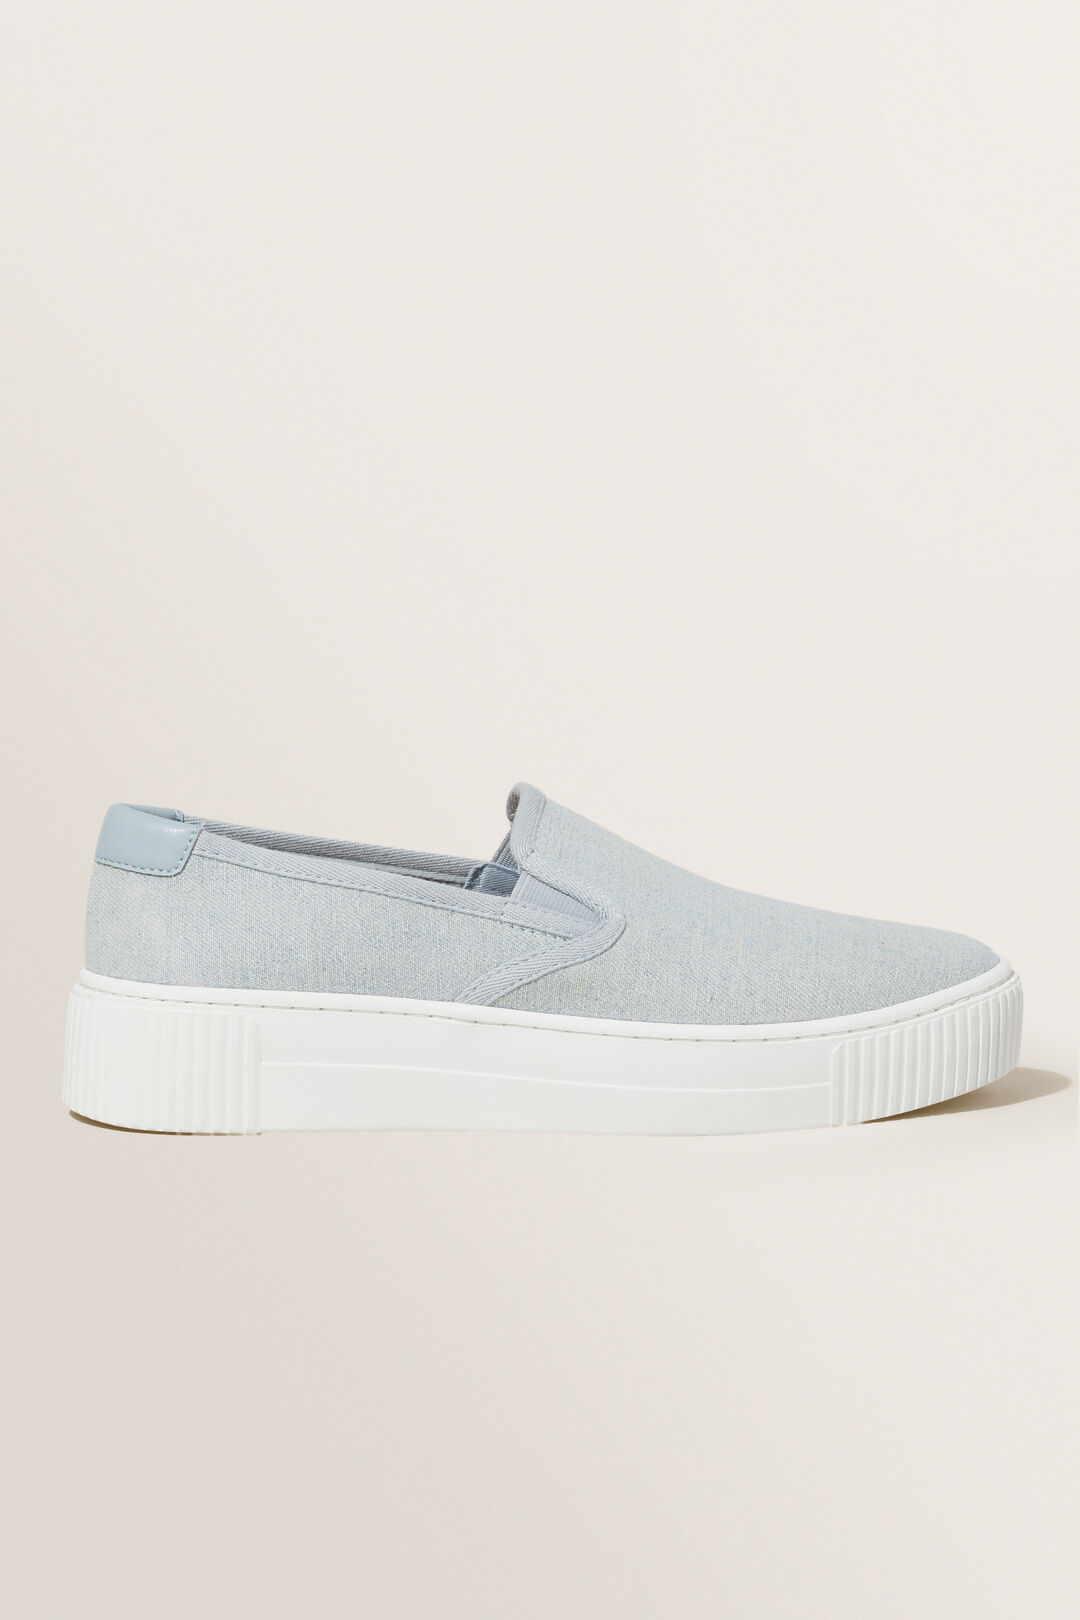 Zoey Slip On Sneaker  Pale Blue Wash  hi-res